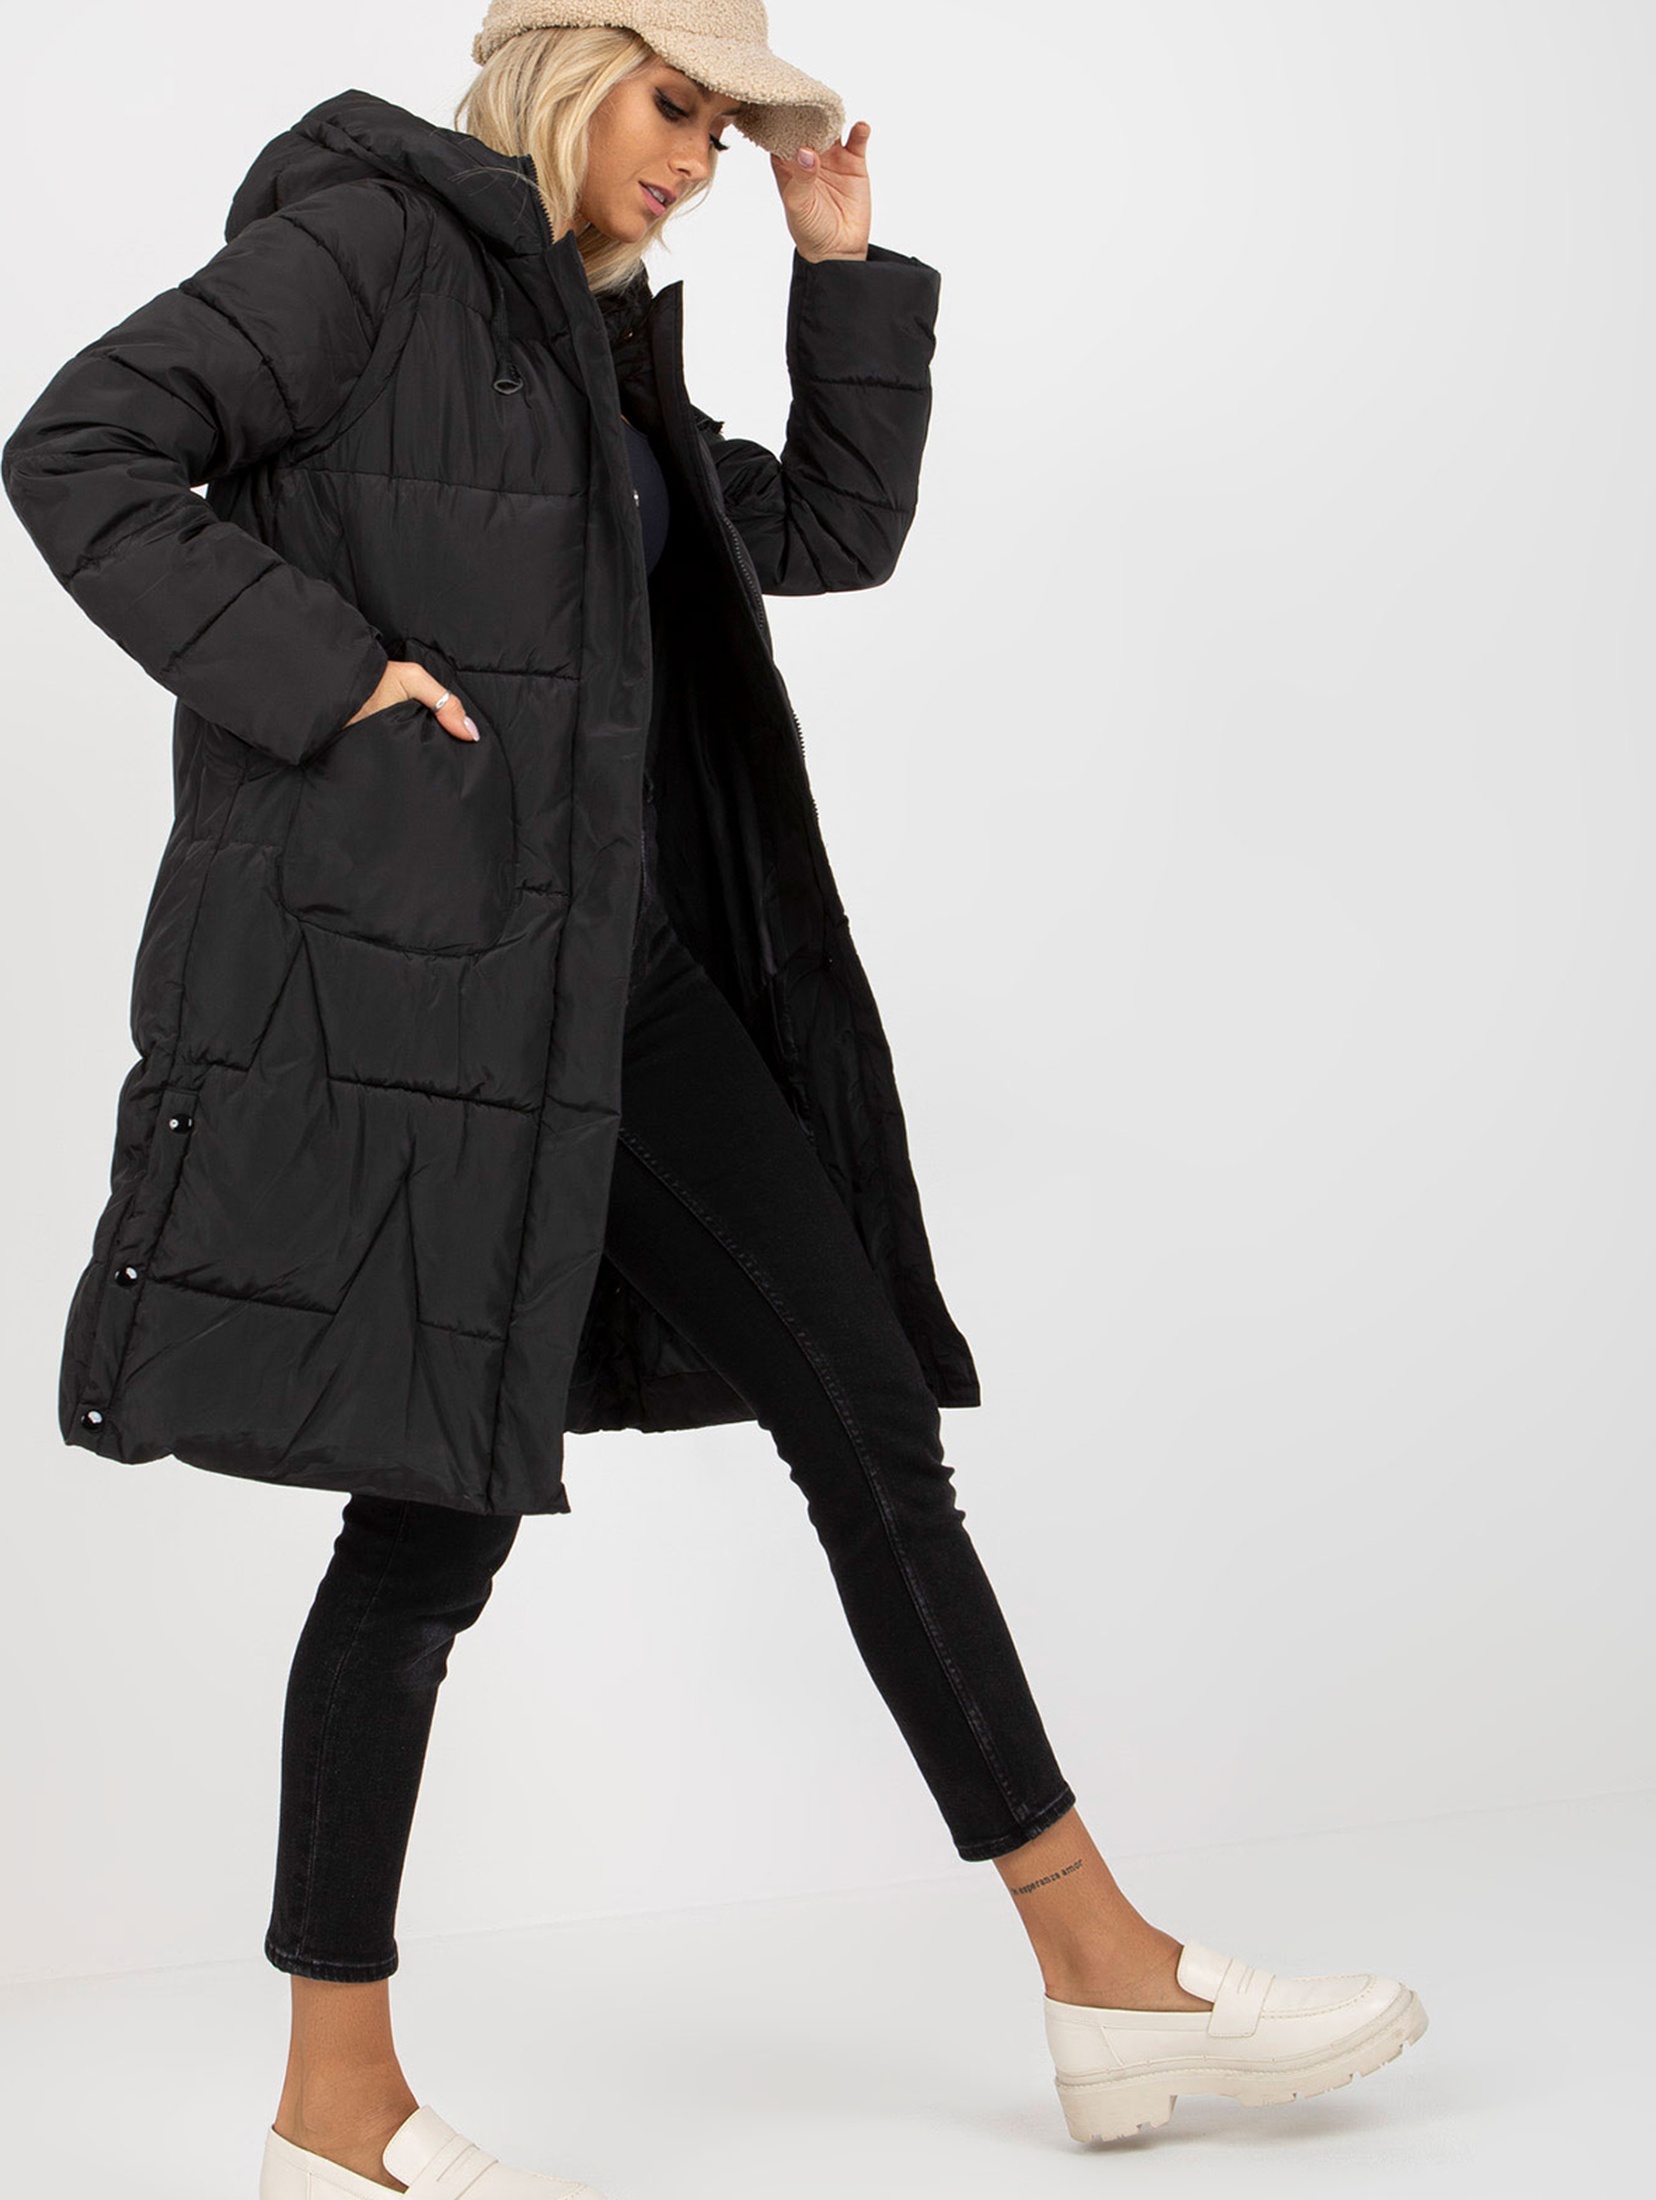 Czarna długa kurtka zimowa 2w1 z odpinanymi rękawami